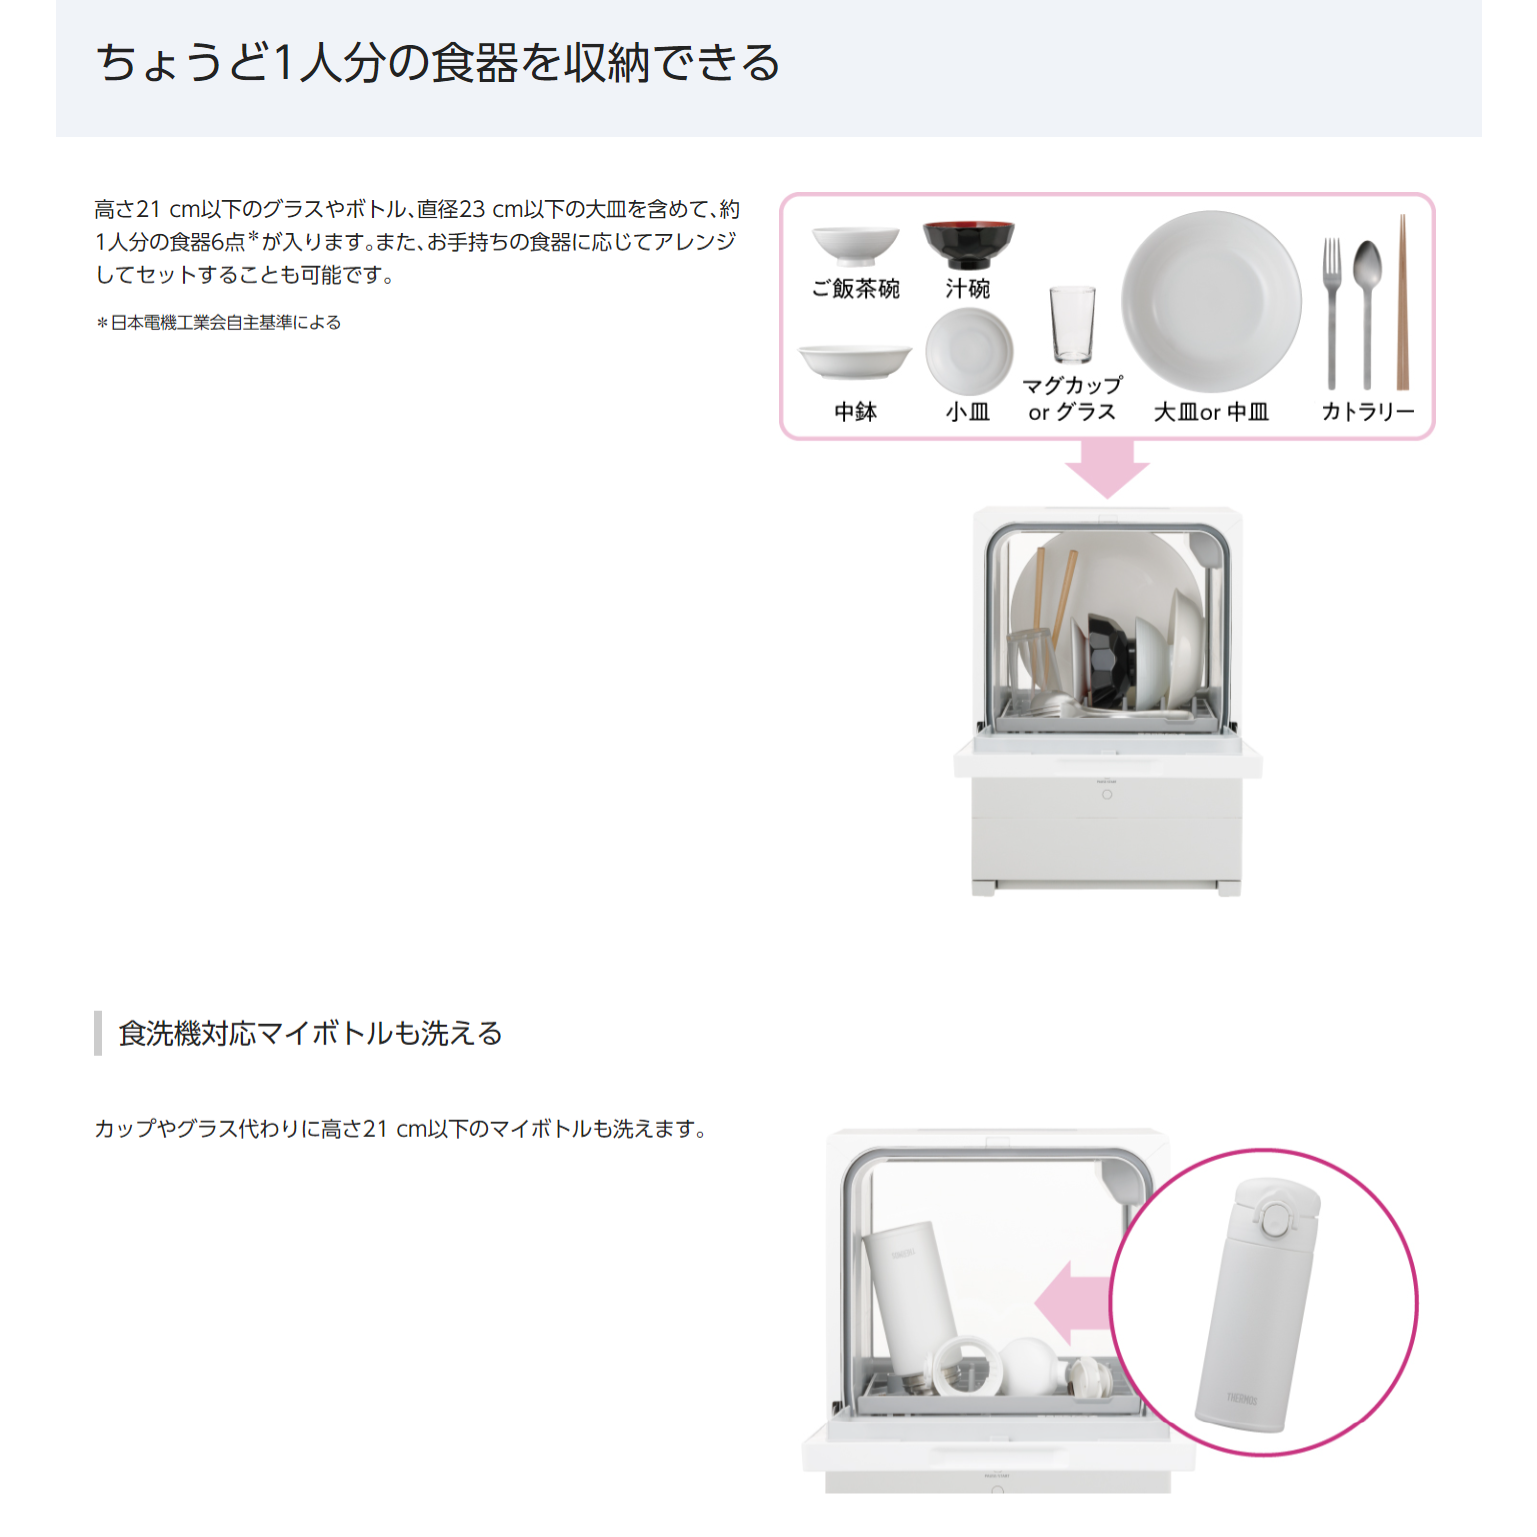 Panasonic SOLOTA NP-TML1單人用除菌洗碗機（免接進水管）